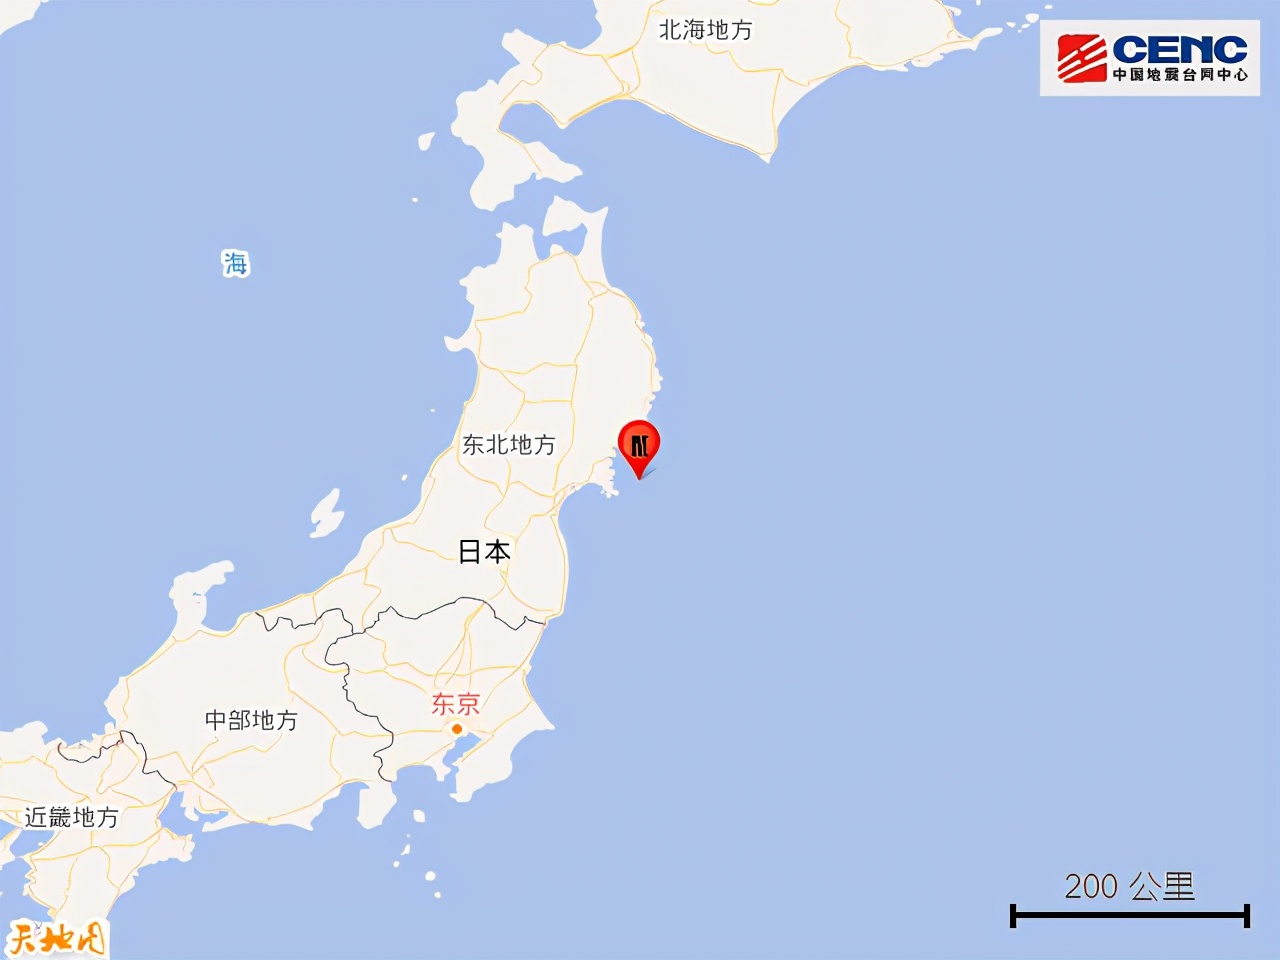 7级大地震再袭日本！海啸预警发出，今年地球进入“震动模式”？